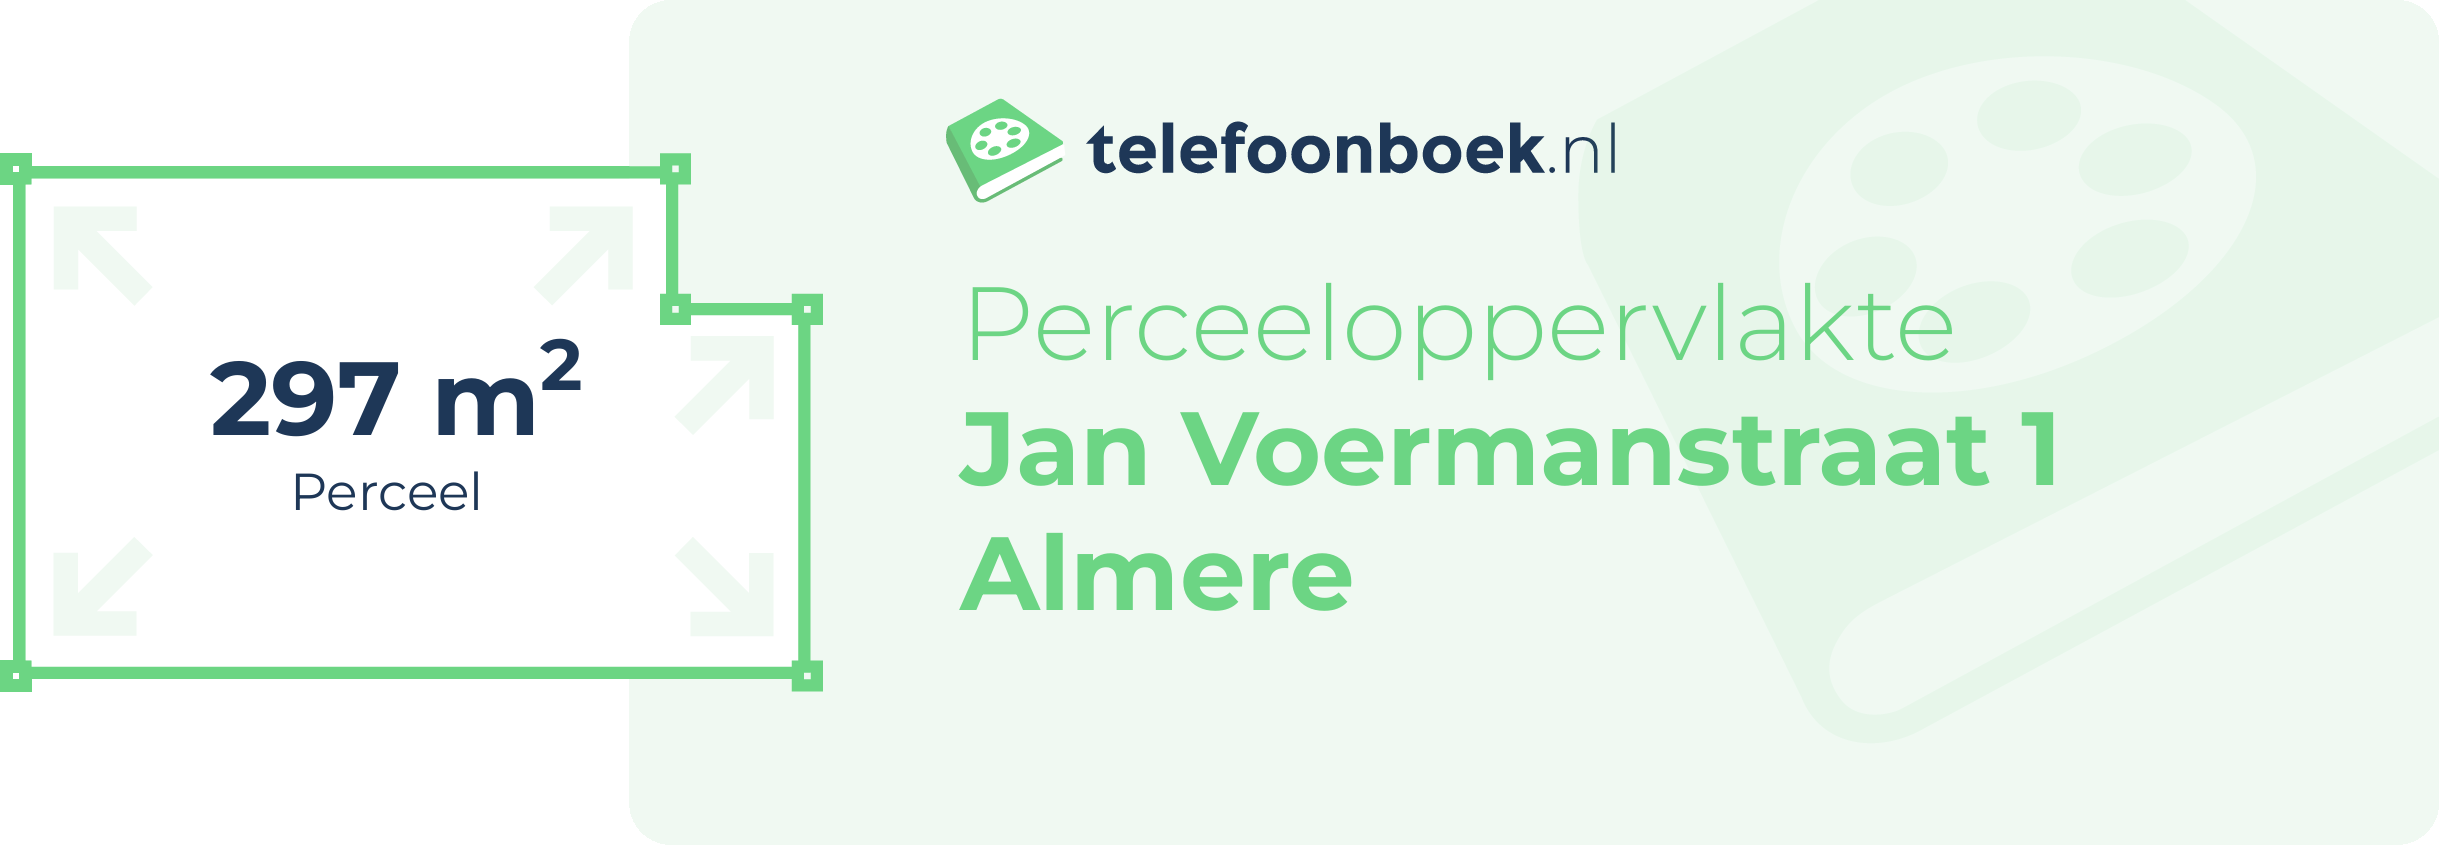 Perceeloppervlakte Jan Voermanstraat 1 Almere